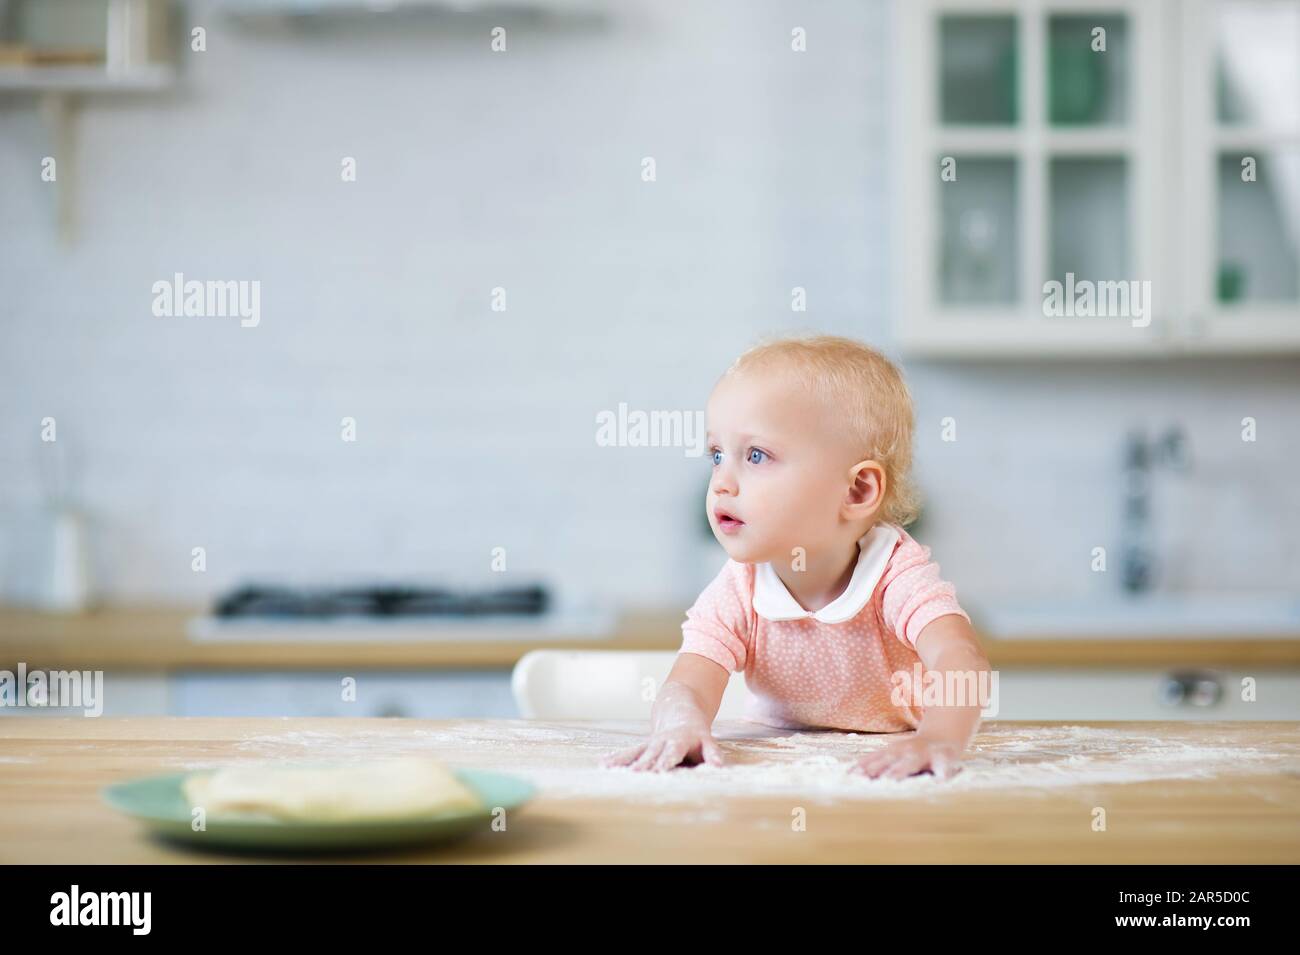 une fillette blonde aux yeux bleus mène ses mains sur le comptoir avec de la farine et regarde loin Banque D'Images